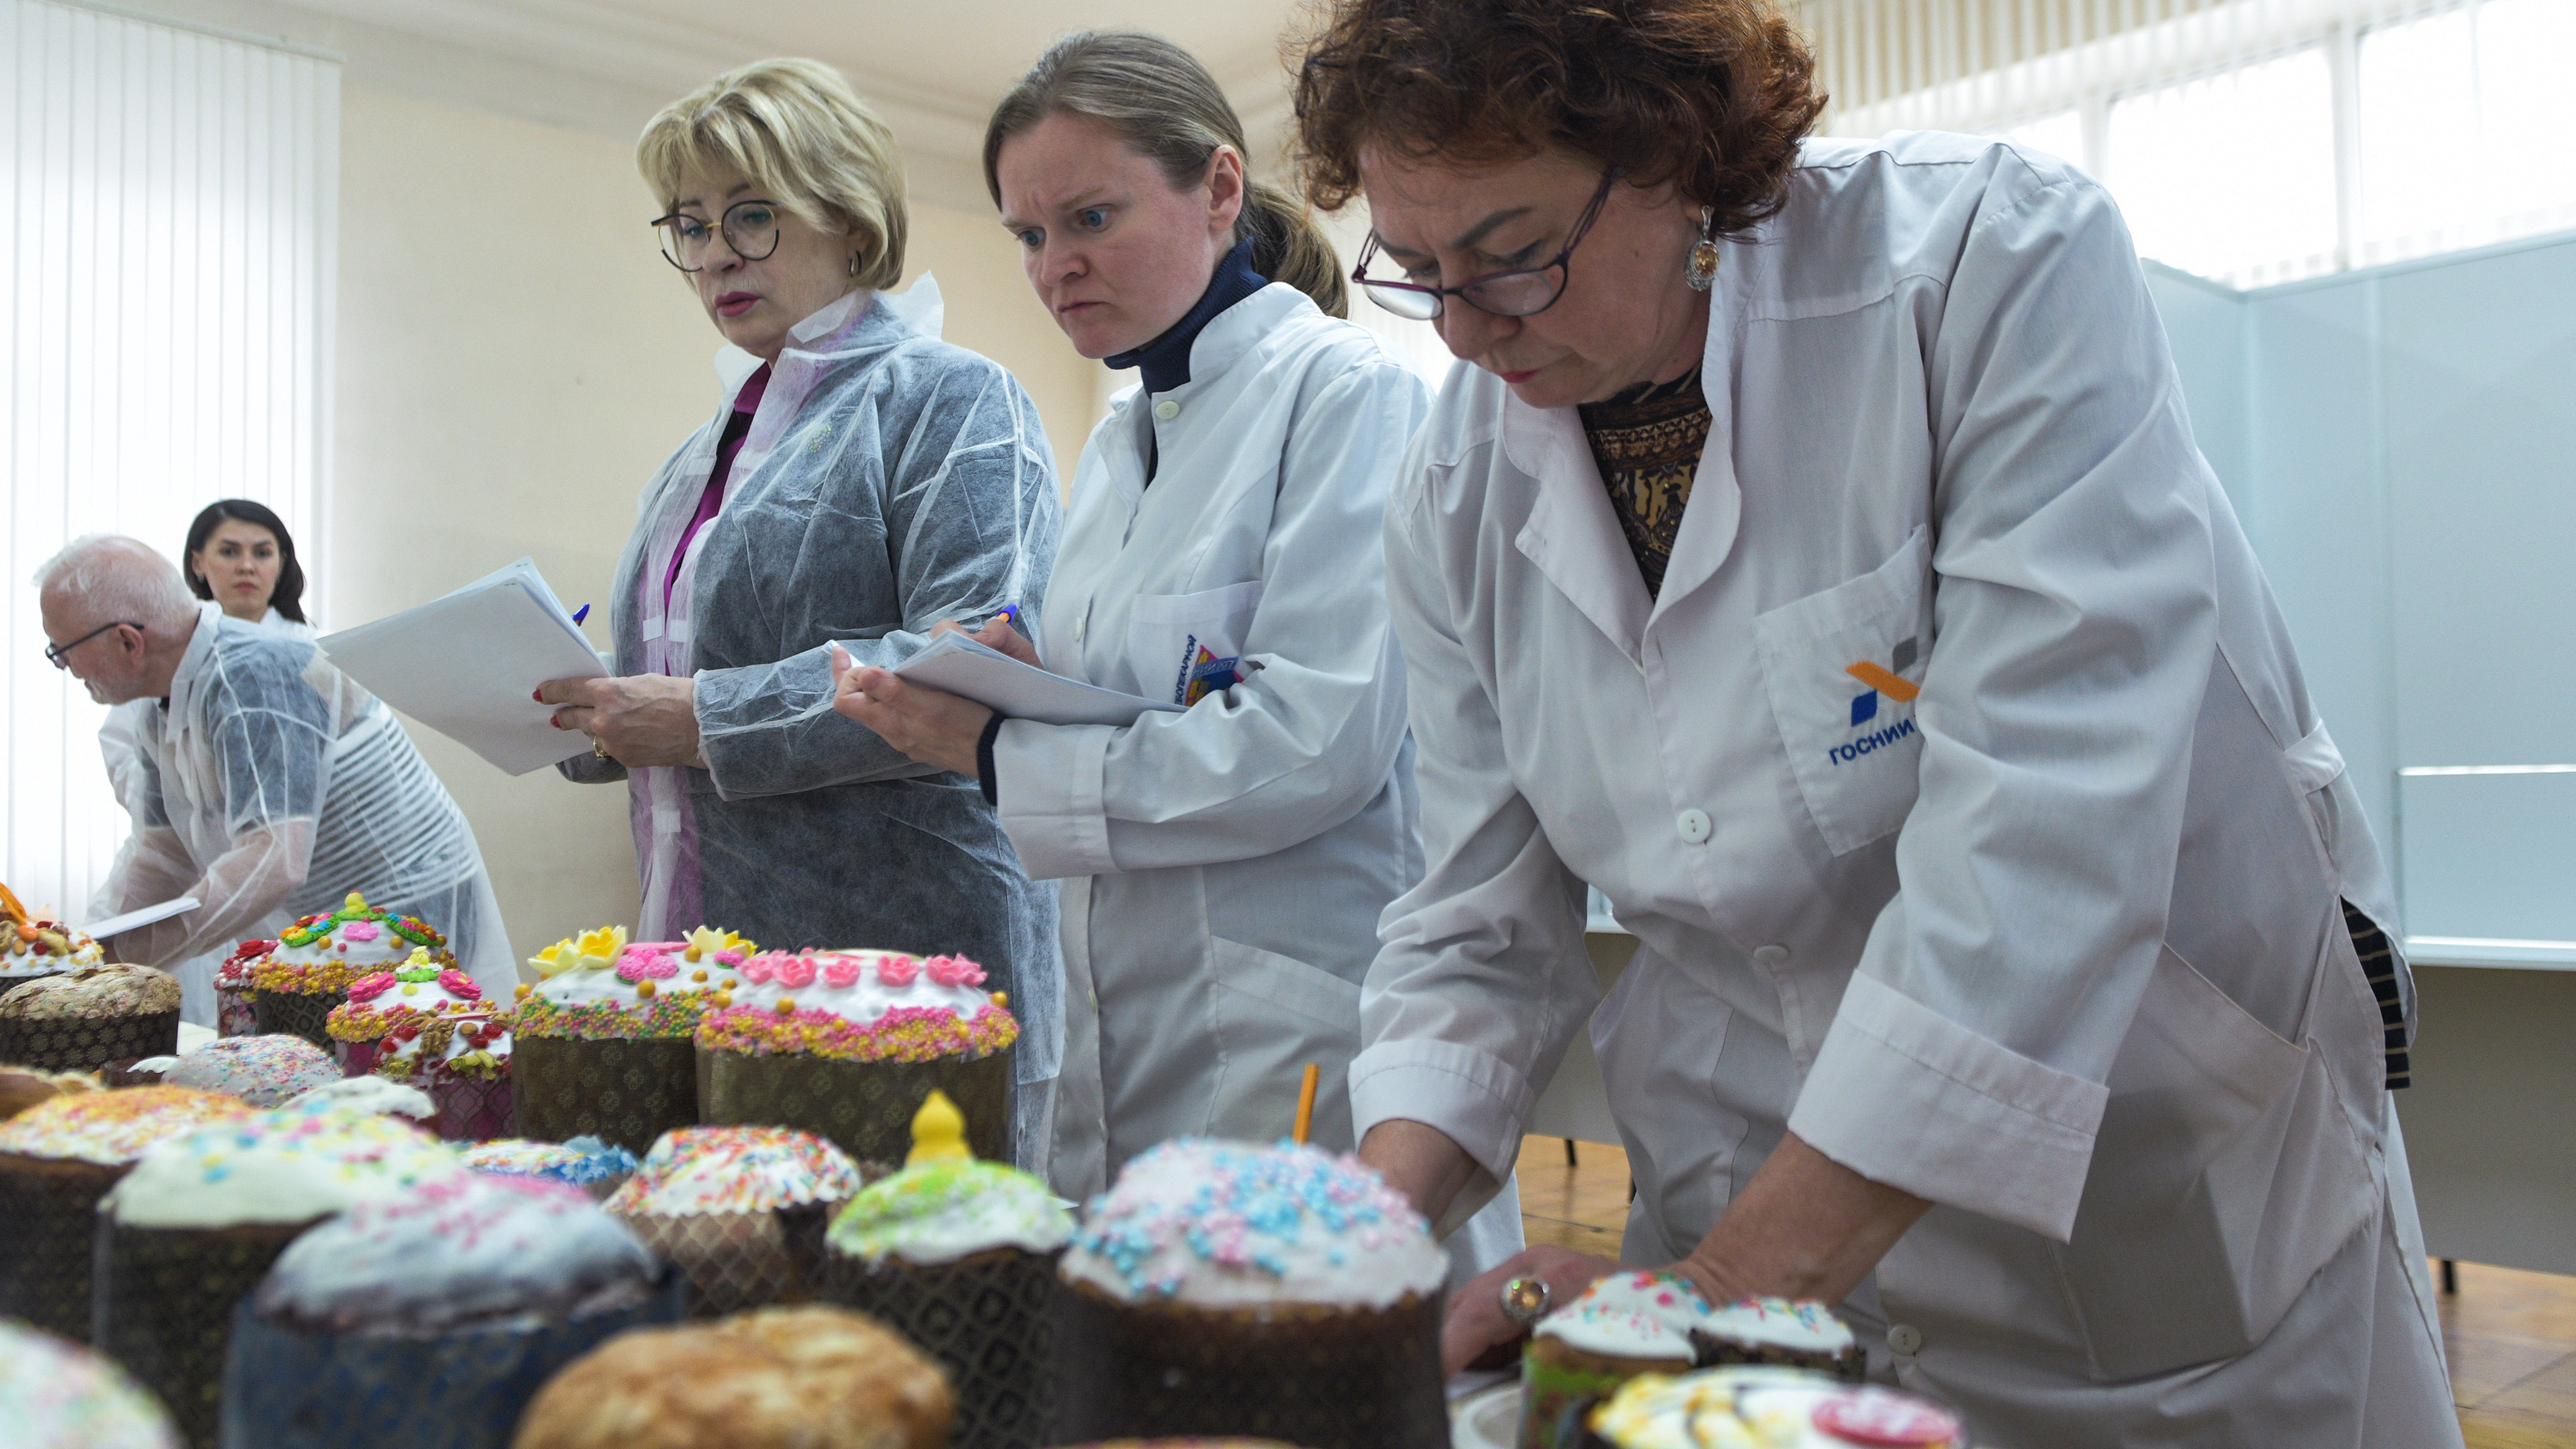 Разговелись науки ради: ученые Москвы за два дня съели 171 пасхальный кулич, чтобы определить самые вкусные